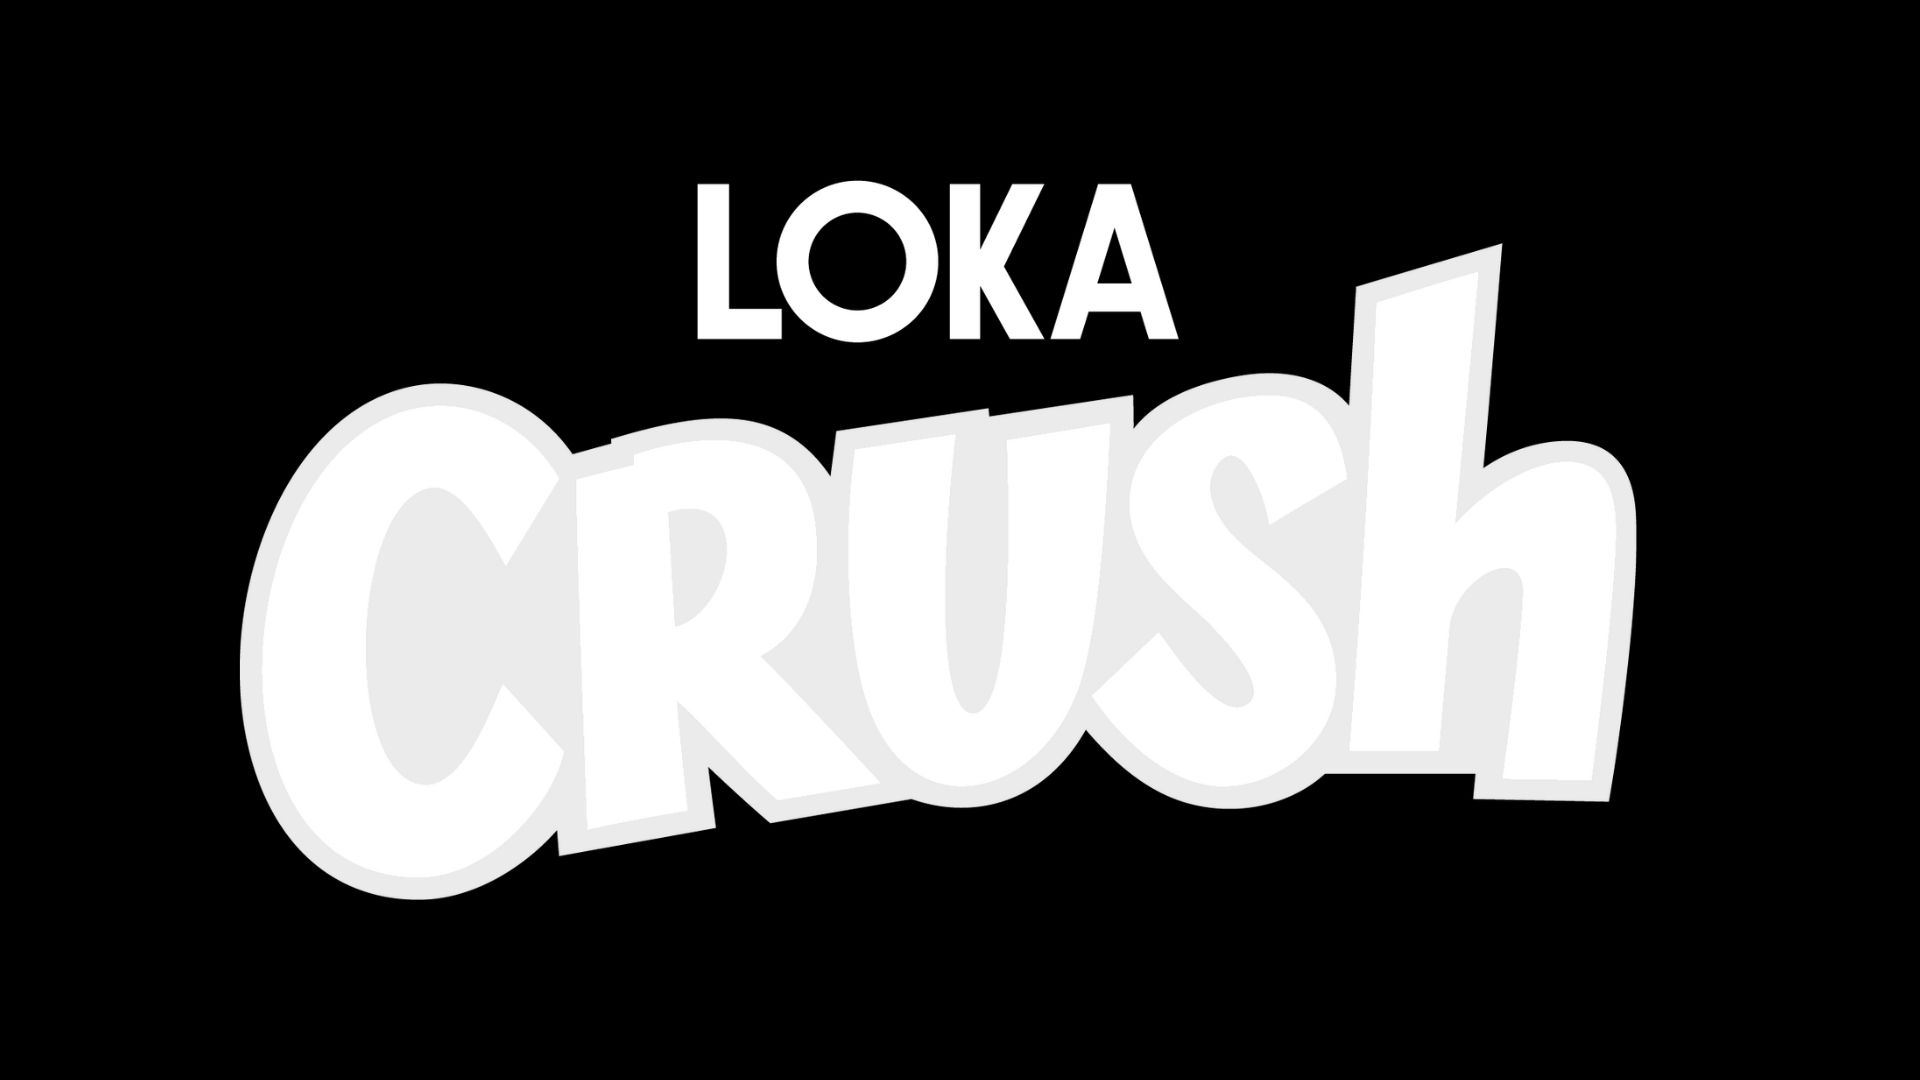 loka crush logga